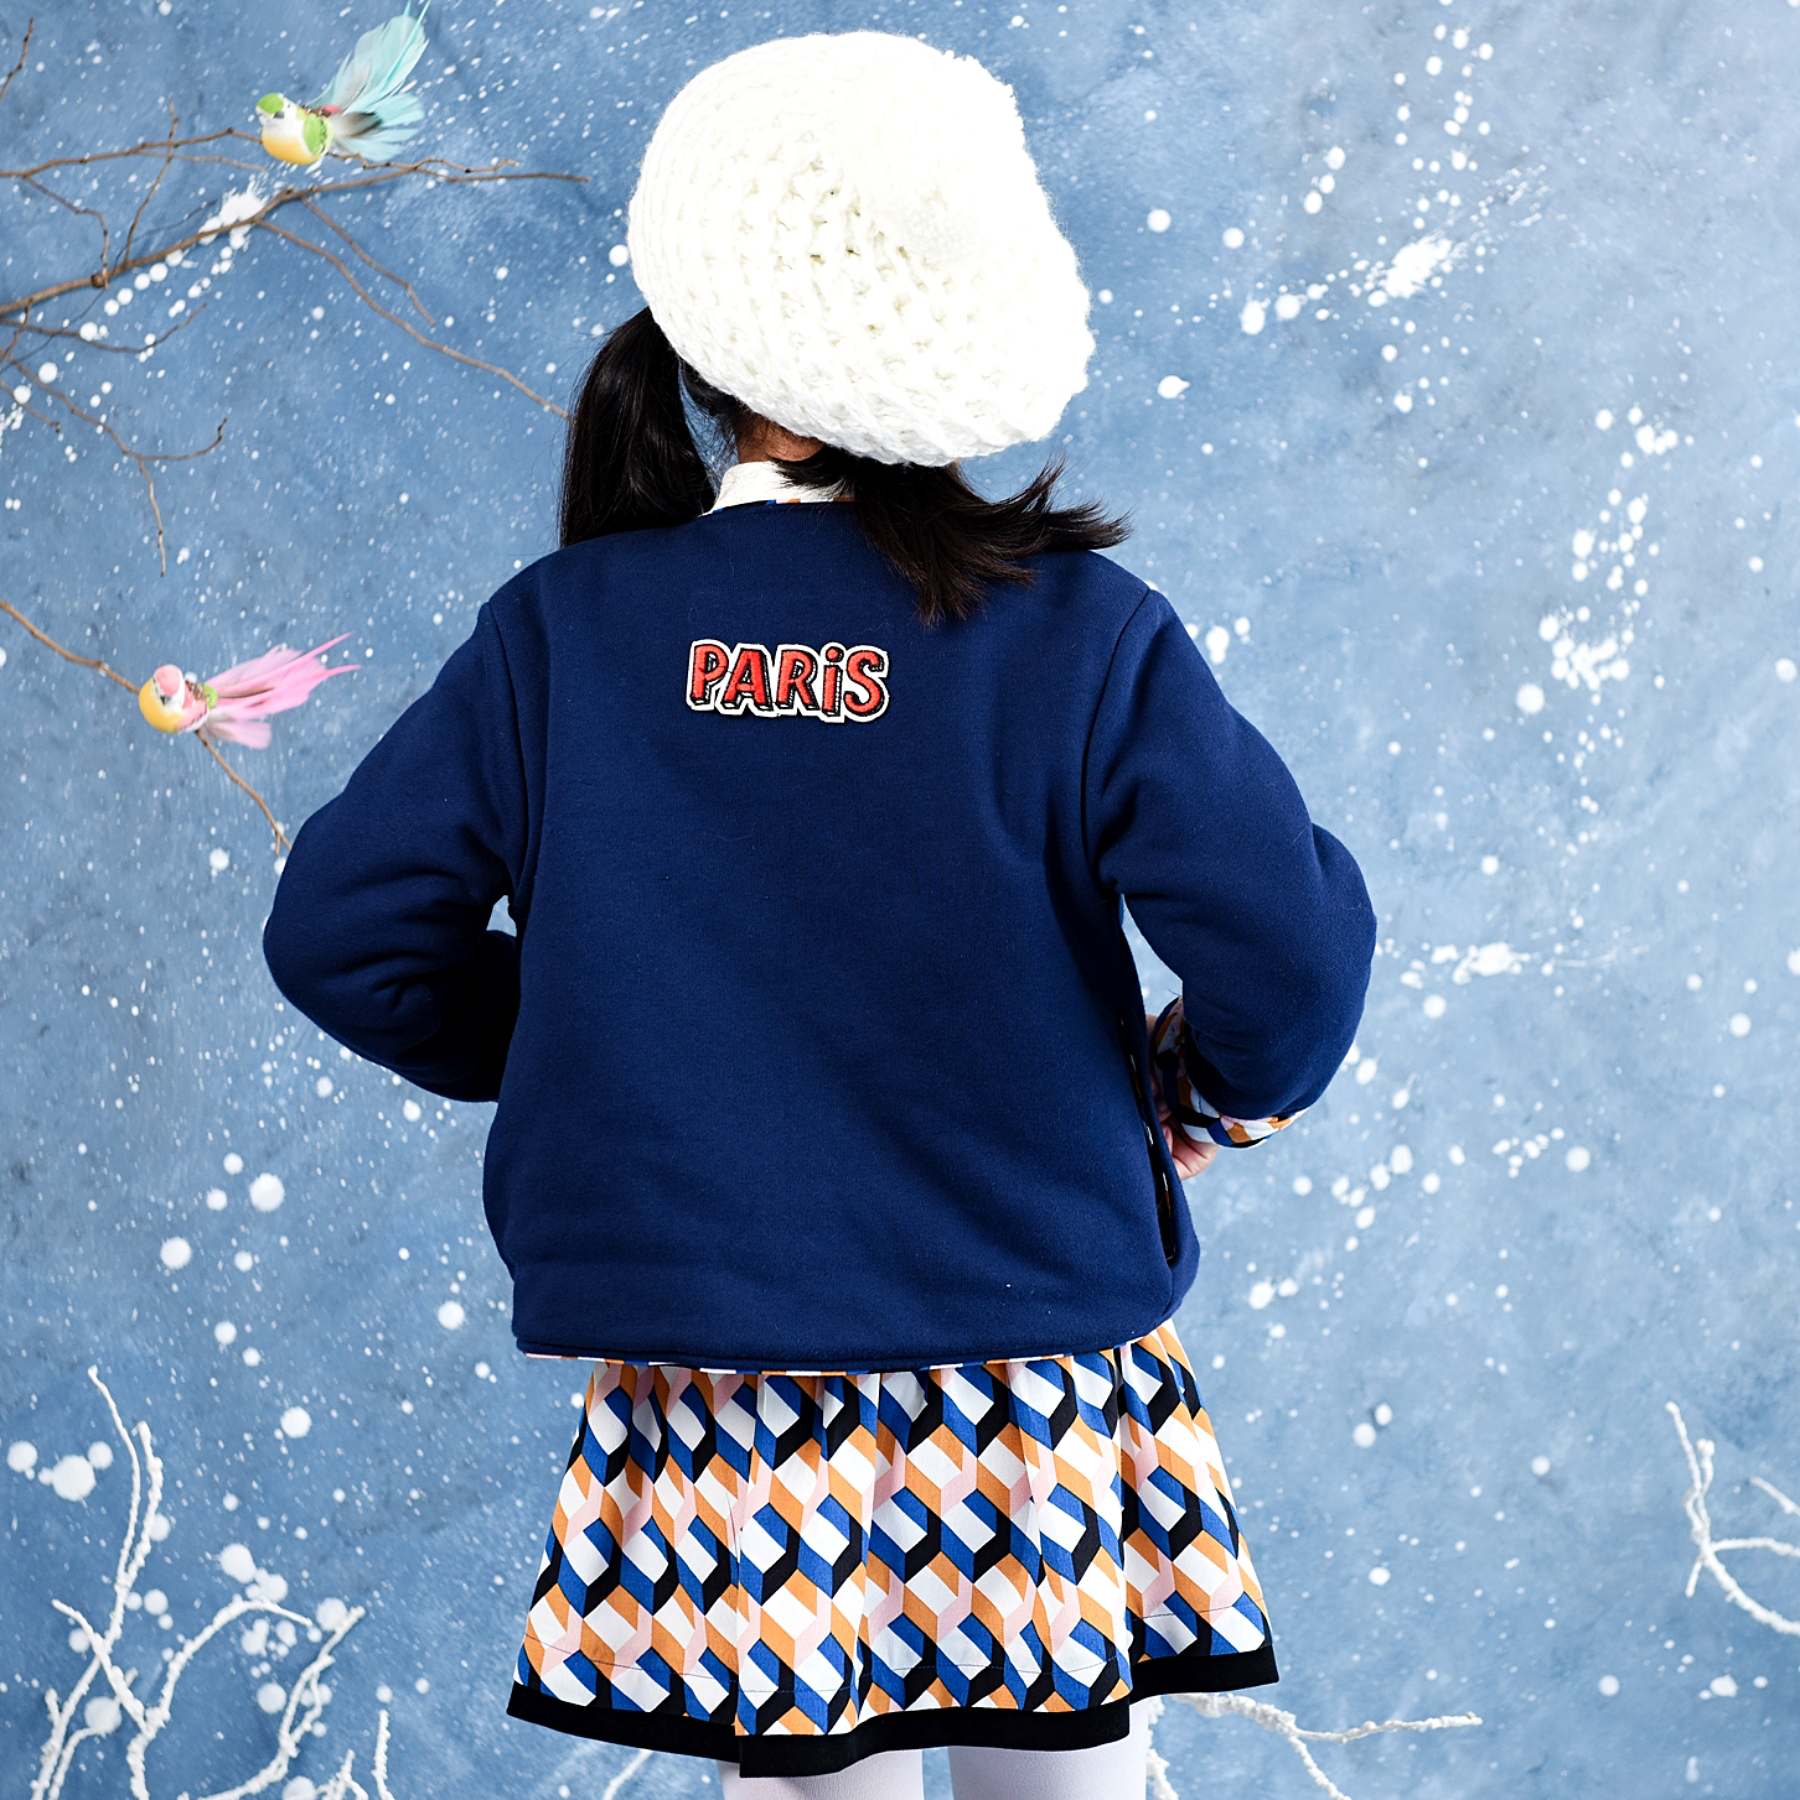 Jolie veste manche longue en molleton bleu marine doublée de coton multicolore avec écusson Paris dans le dos. Veste courte pour filles et fillettes dee la marque de mode pour enfants LA FAUTE A VOLTAIRE